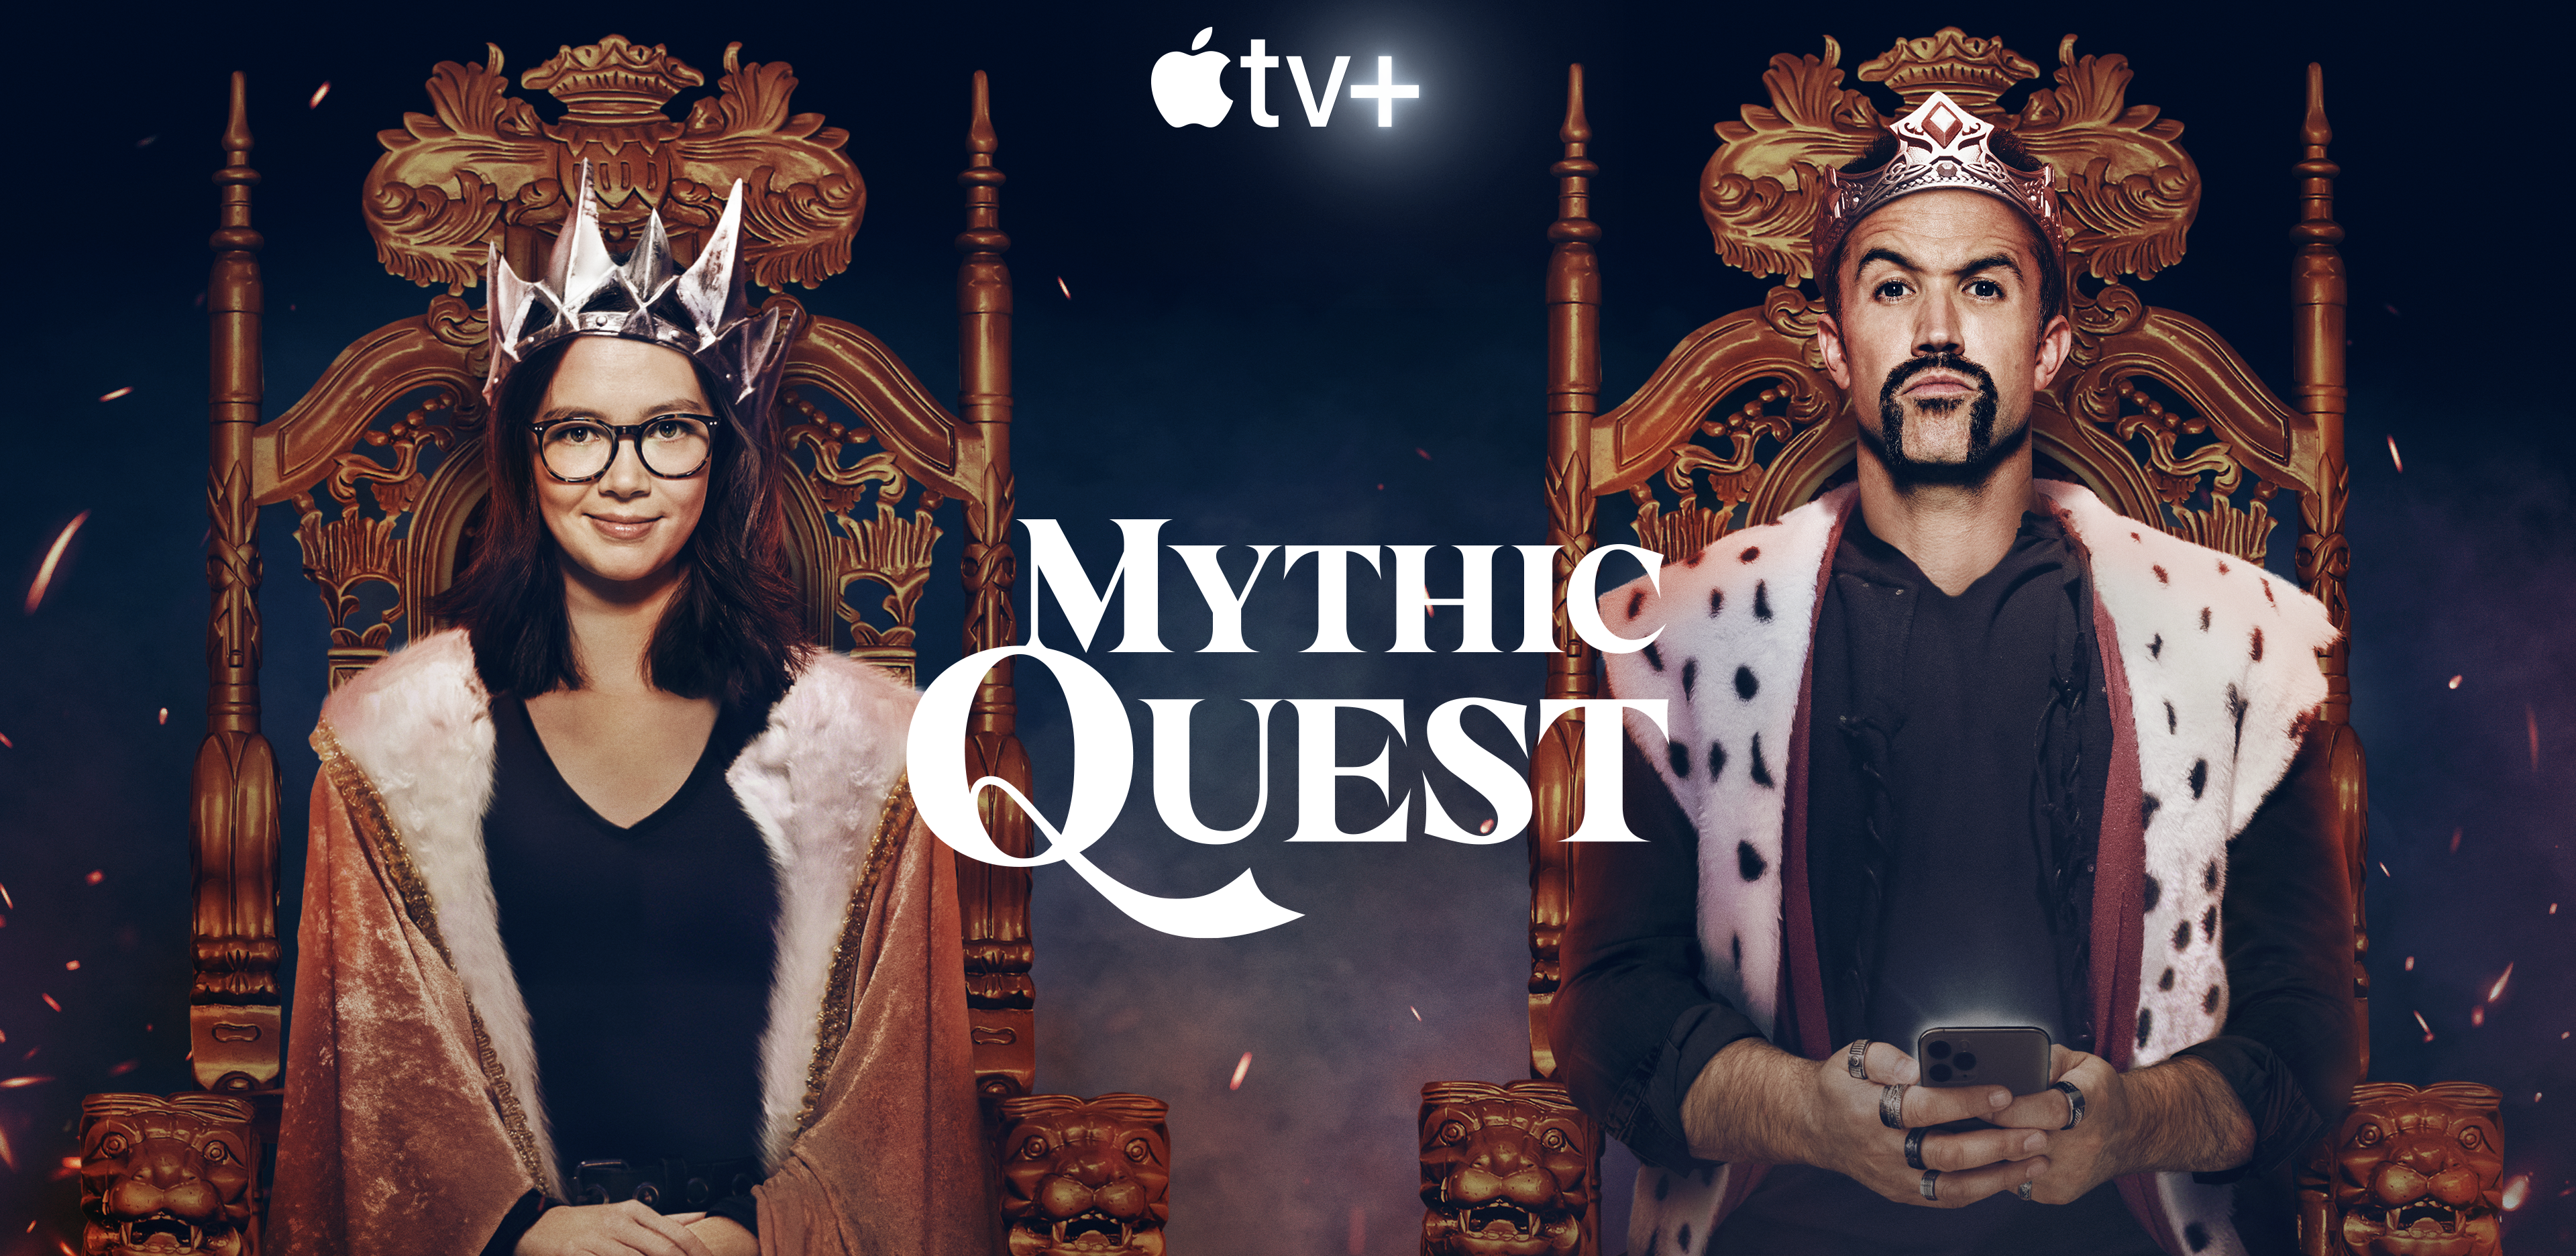 Mythic Quest bonus episode